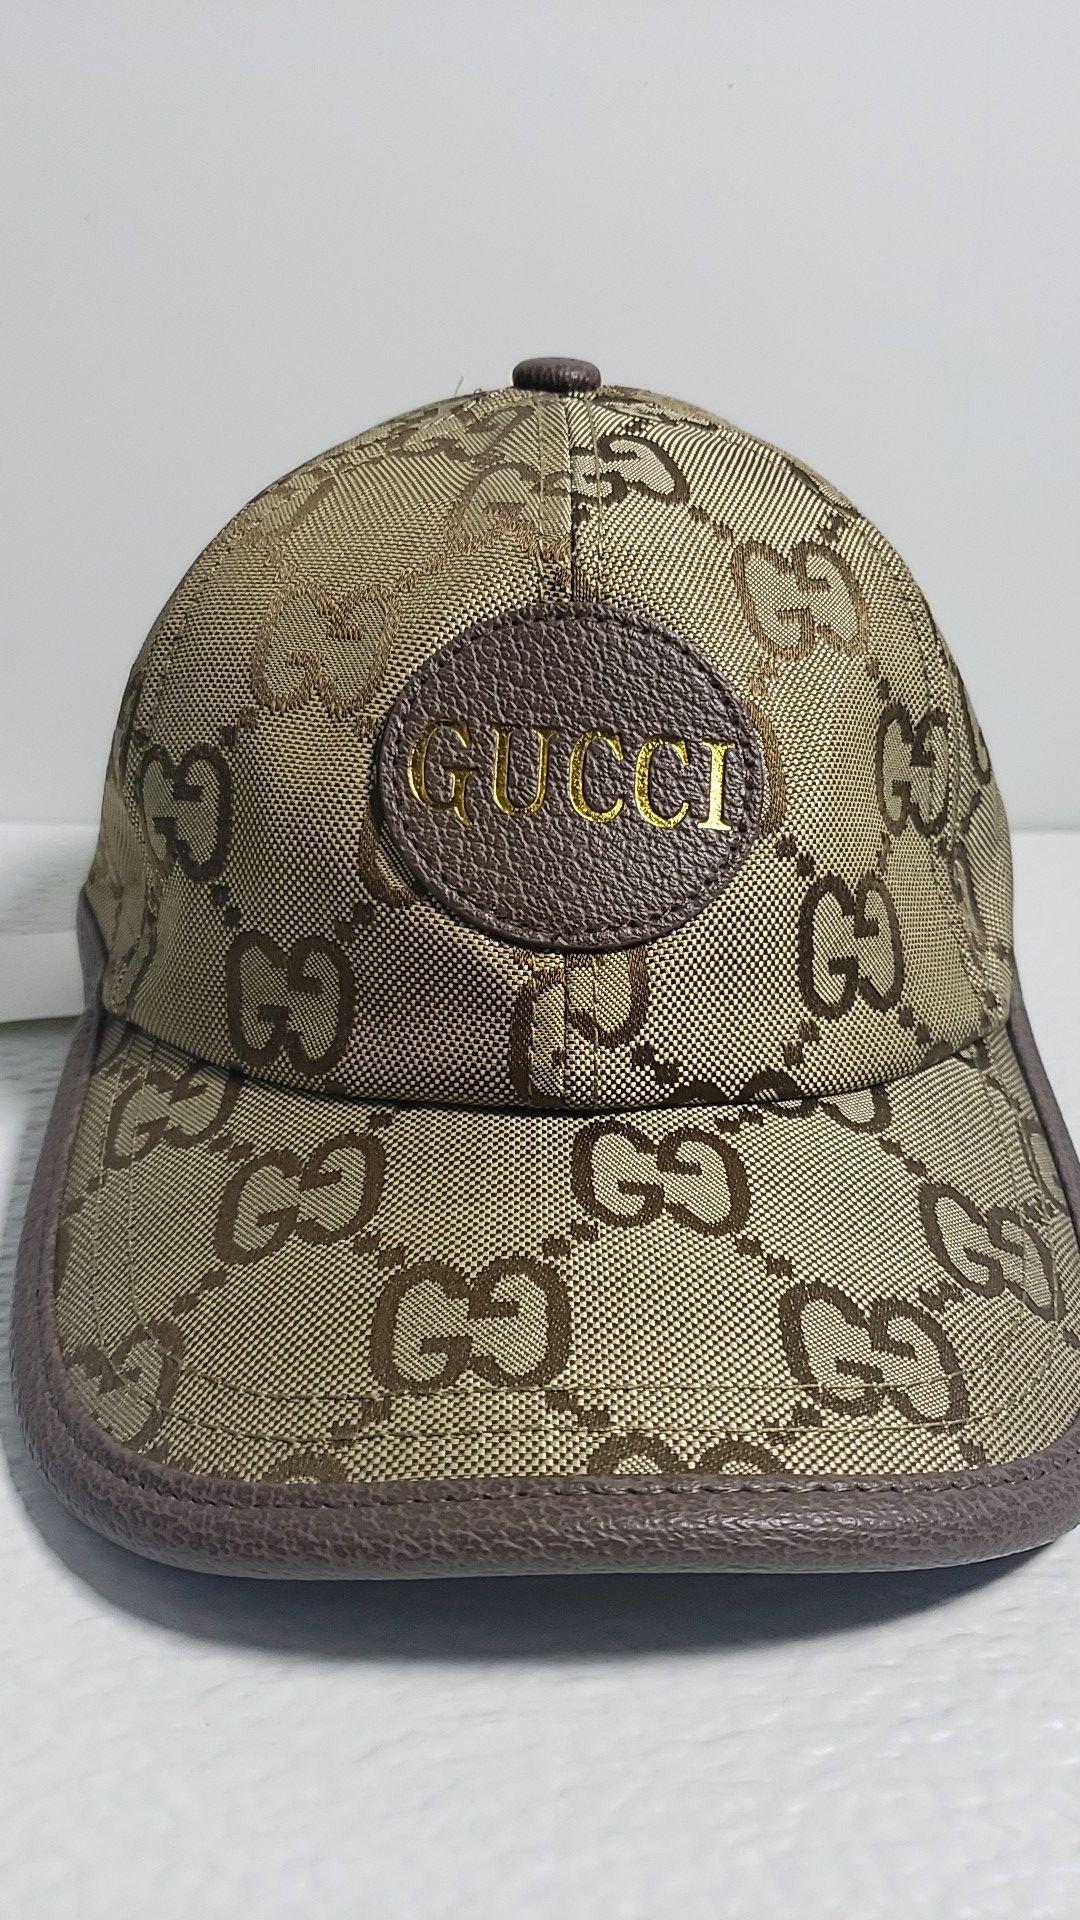 Gucci hat/Cap